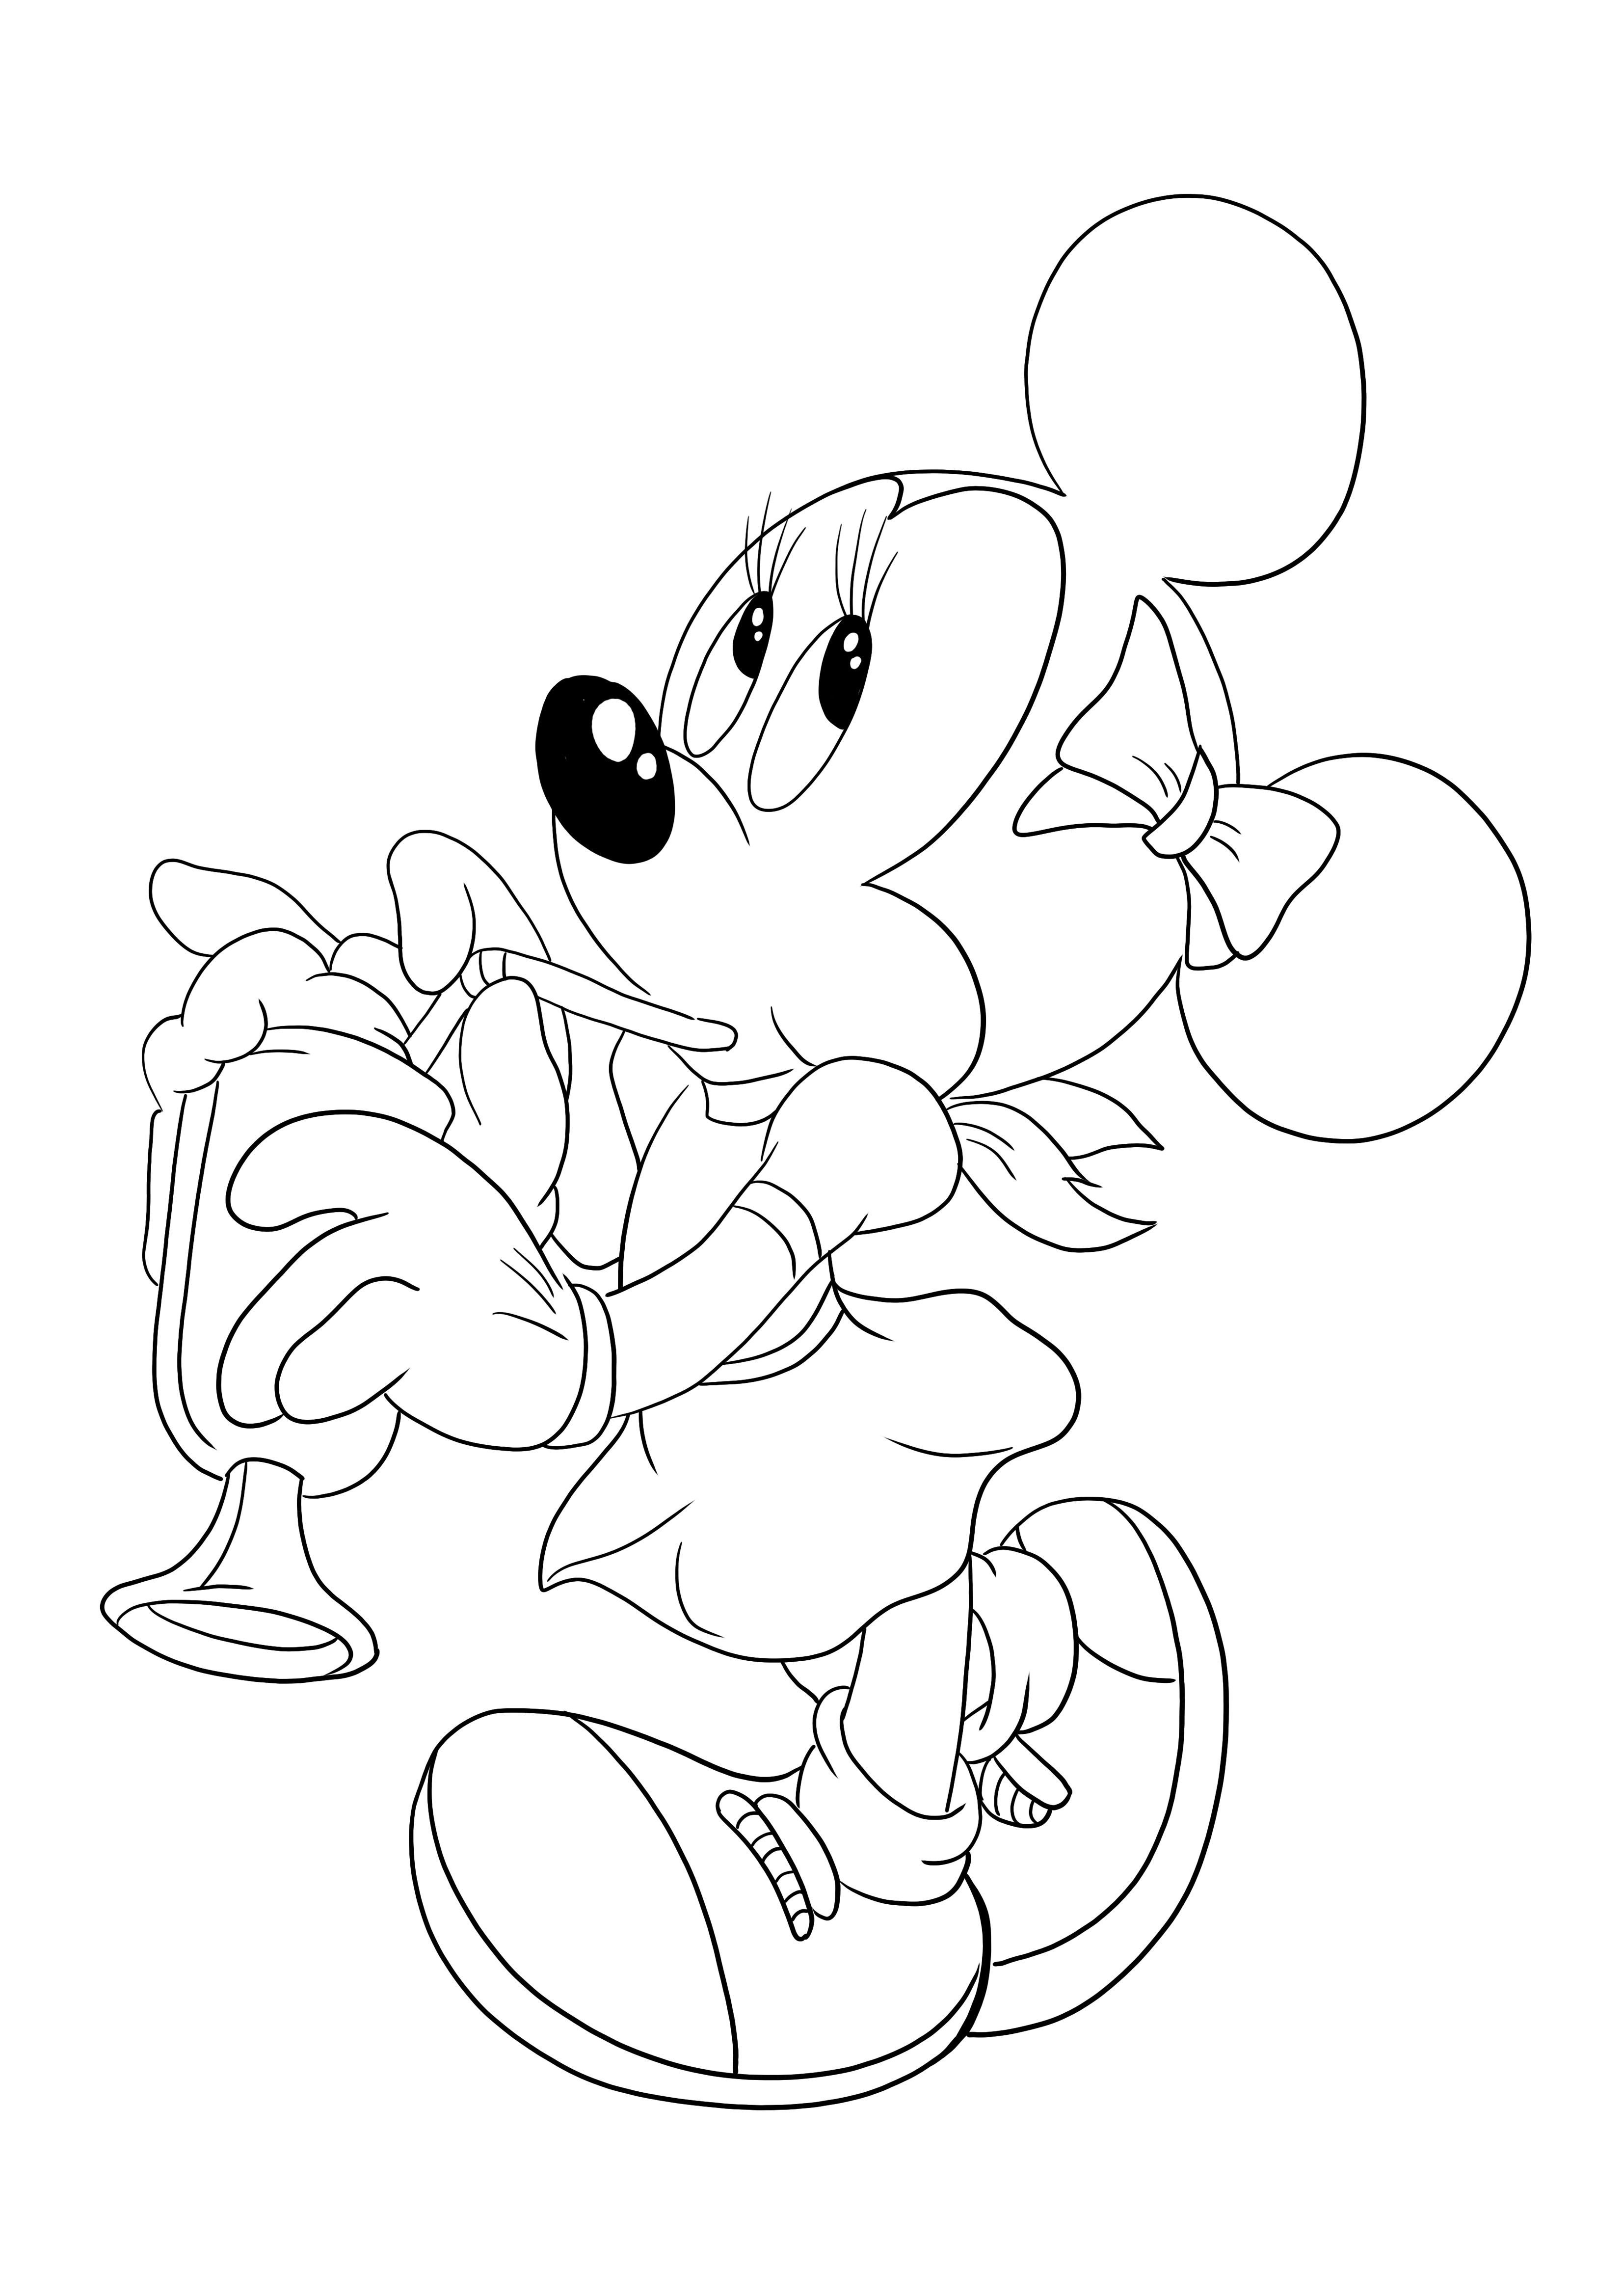 Minnie Mouse minum melalui sedotan untuk mengunduh dan mewarnai lembar gratis